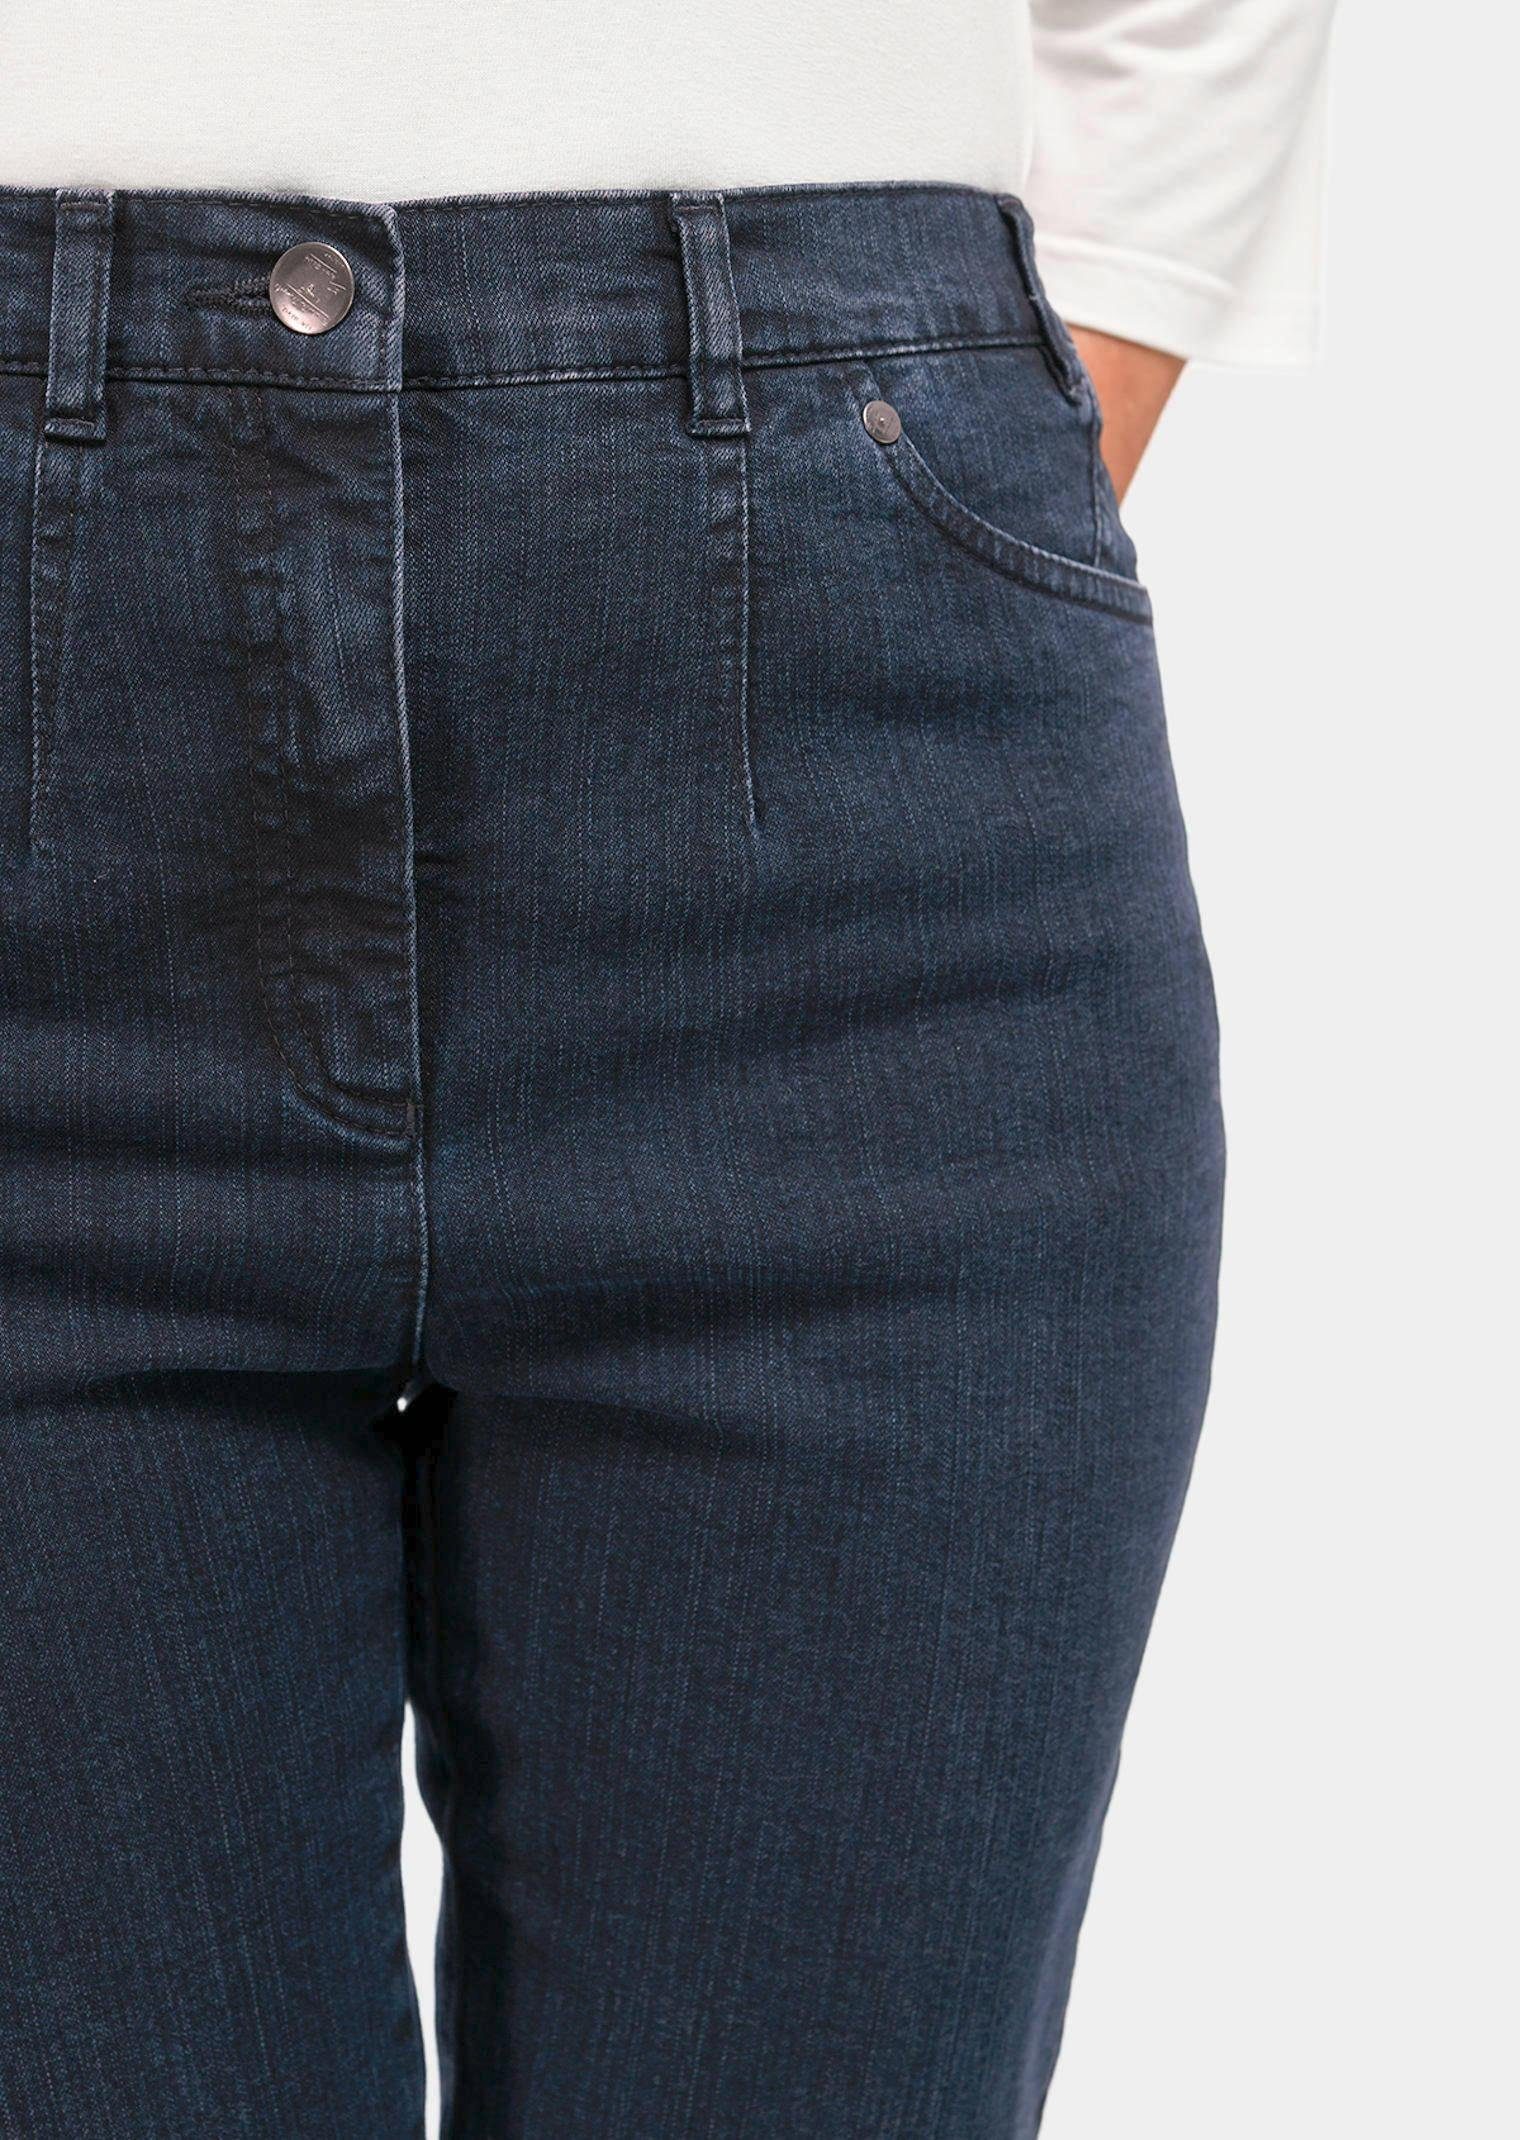 GOLDNER Bequeme Jeans Kurzgröße: Schlichte Jeanshose dunkelblau ANNA